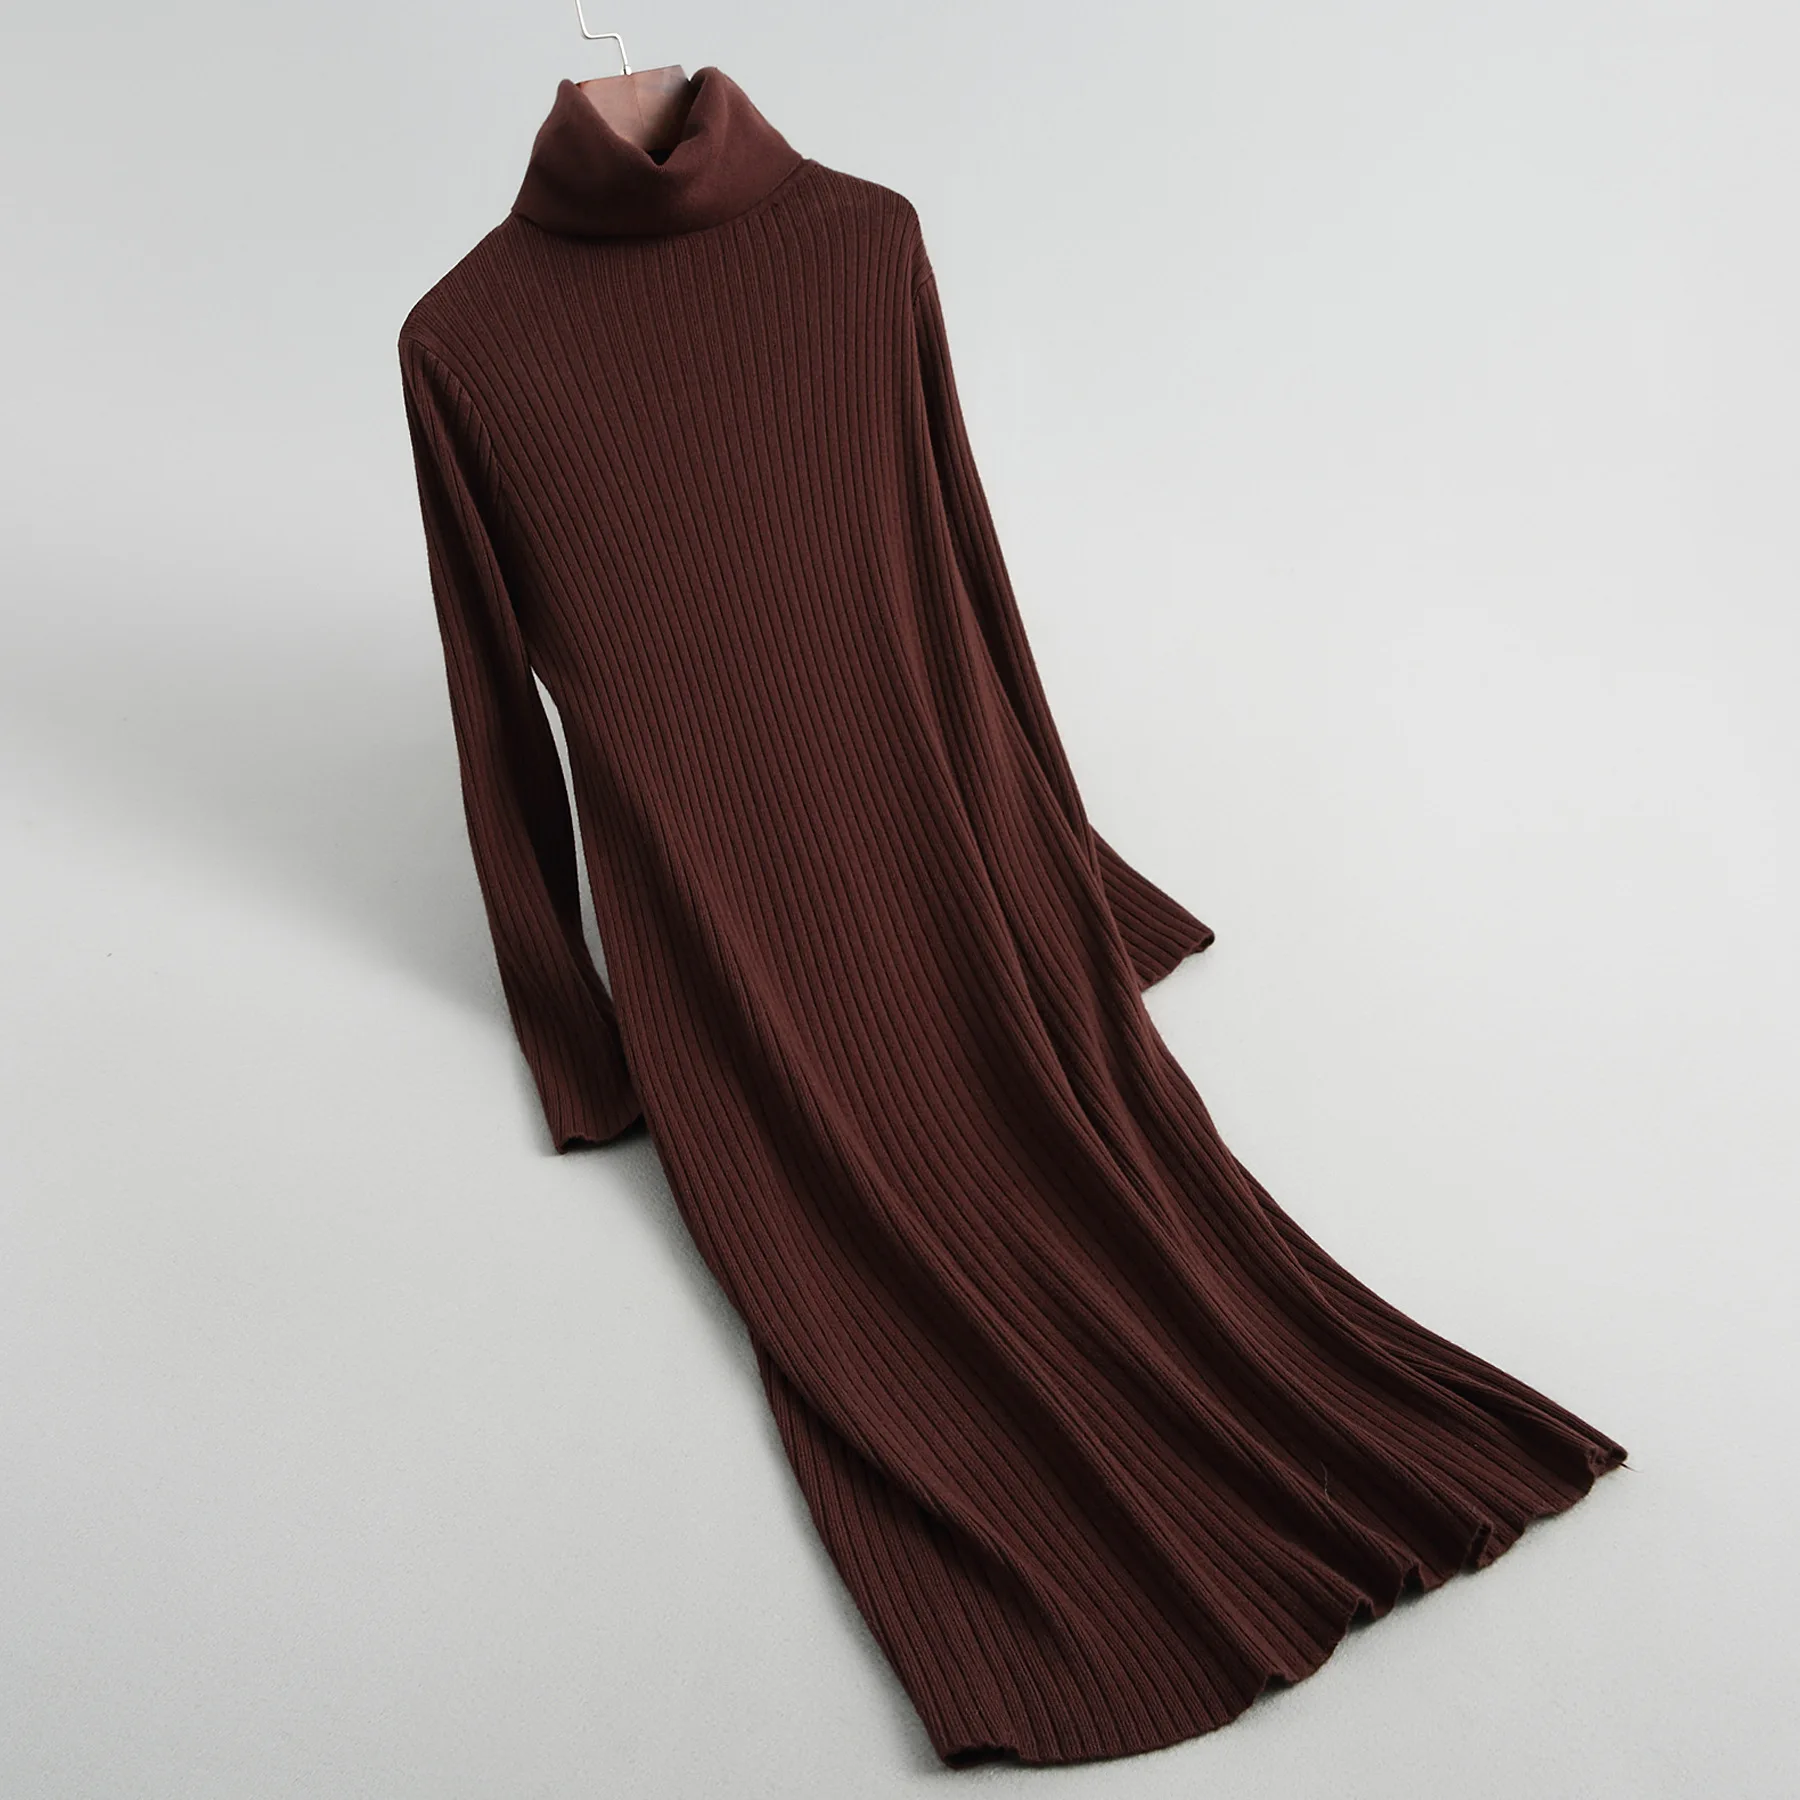 Зимнее платье женские пуловеры платья длинный рукав водолазка теплый длинный вязаный шерстяной свитер вязаный свитер Femme vestidos mujer